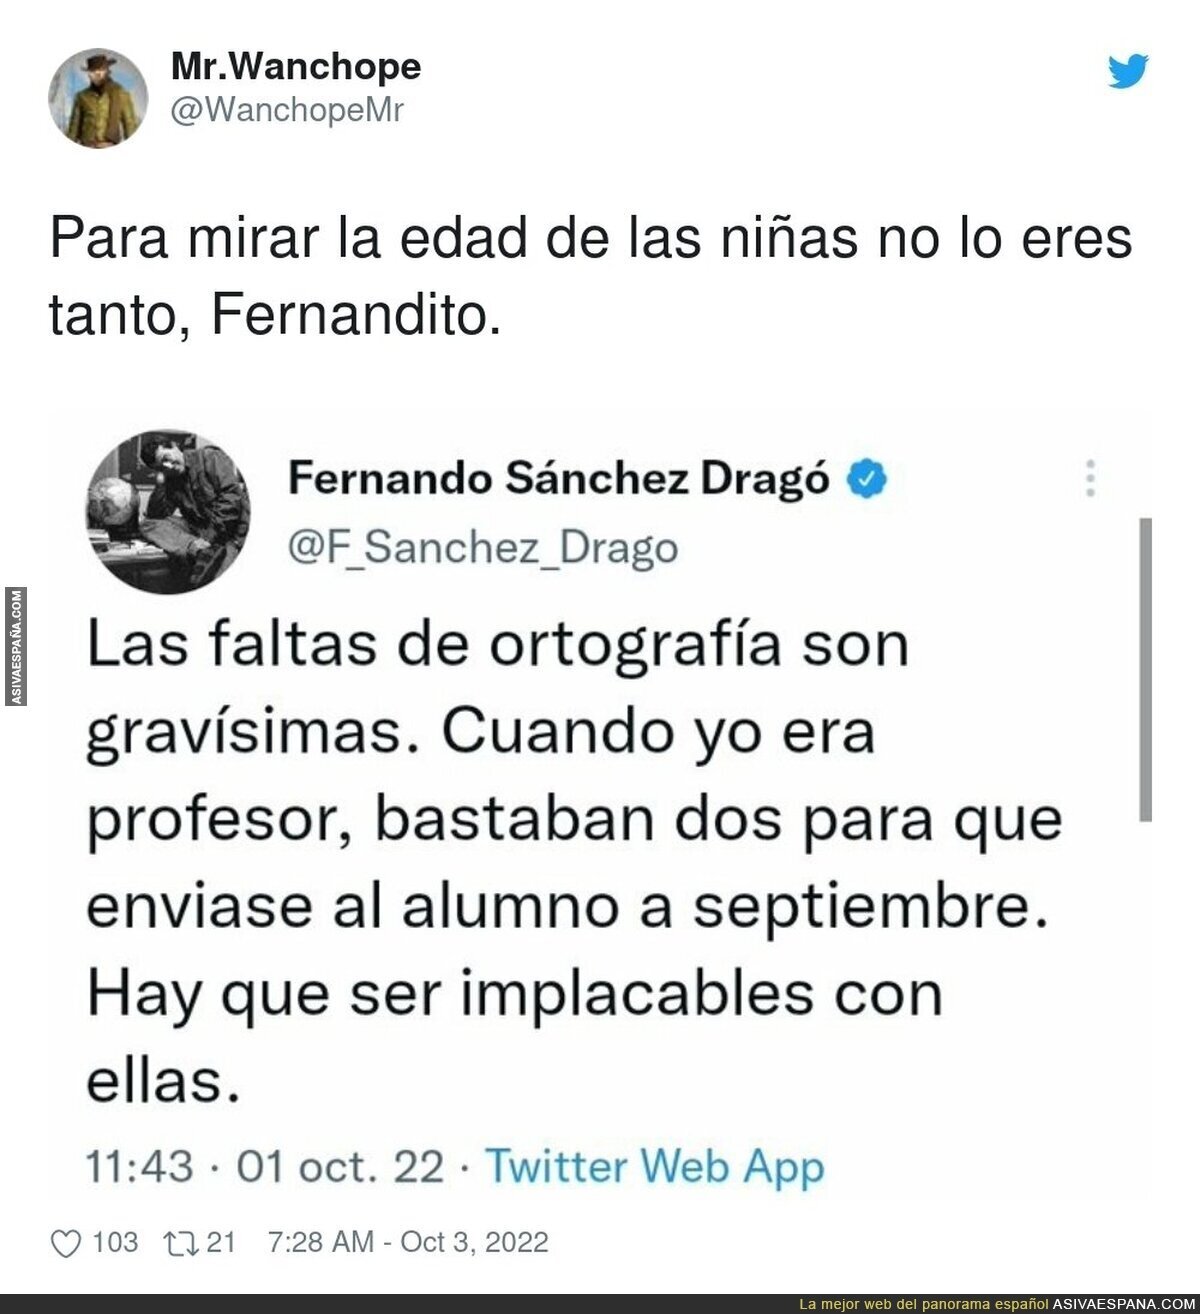 Las excepciones de Fernando Sánchez Dragó